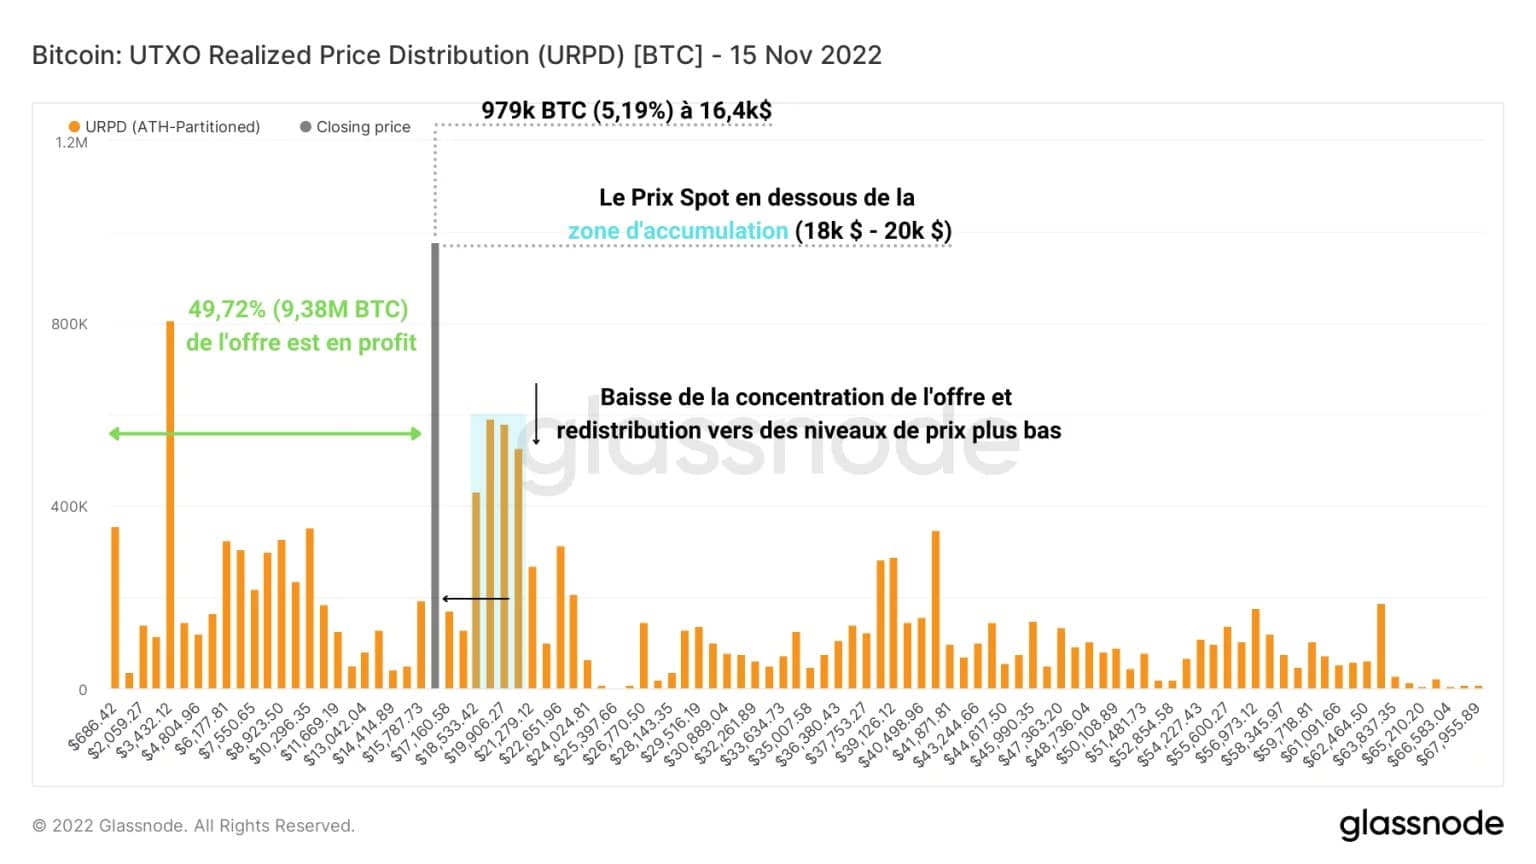 Figura 3: Distribución del precio realizado del UTXO (15 de noviembre de 2022)